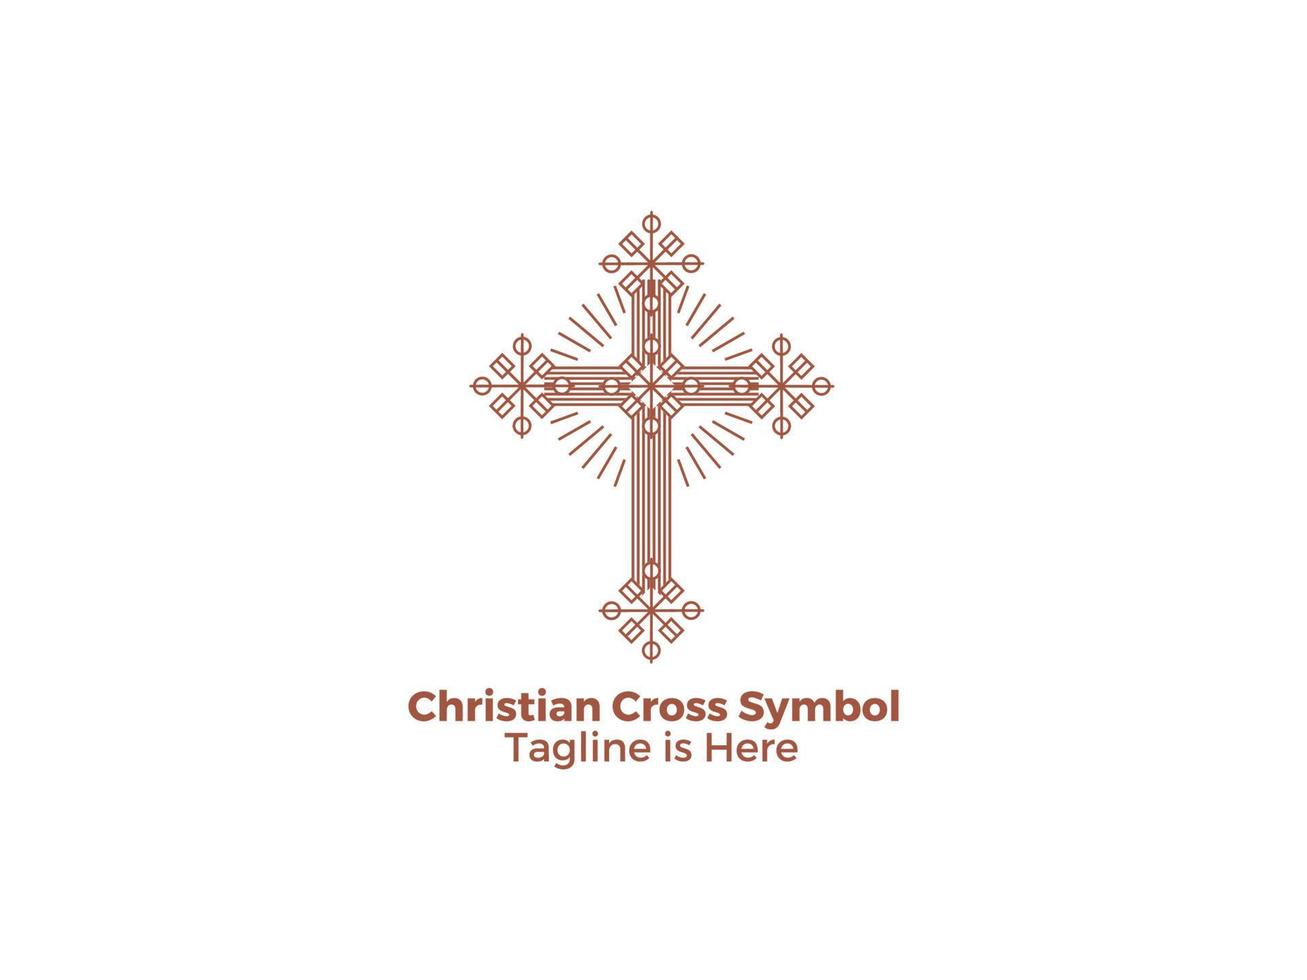 das kreuz ist ein symbol der christentums-katholischen religion die kirche von jesus freies vektordesign vektor